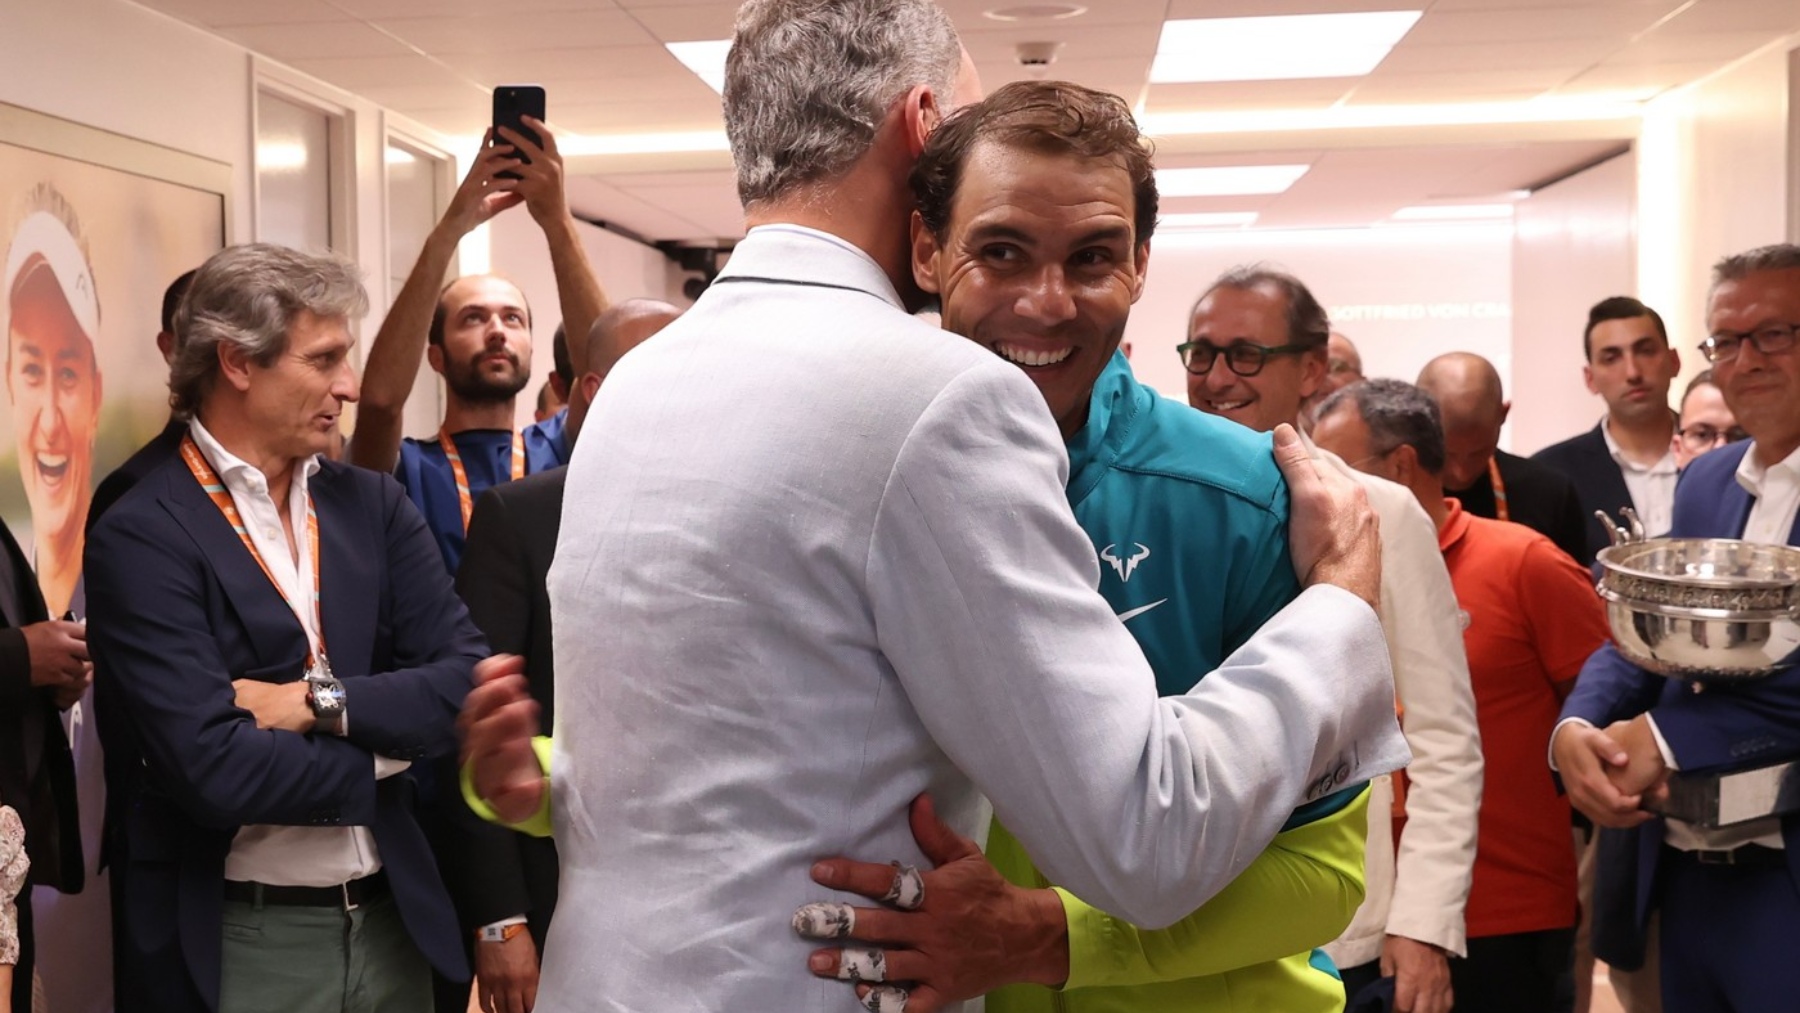 El Rey y Nadal tras la final de Roland Garros 2022 (© Casa de S.M. el Rey)